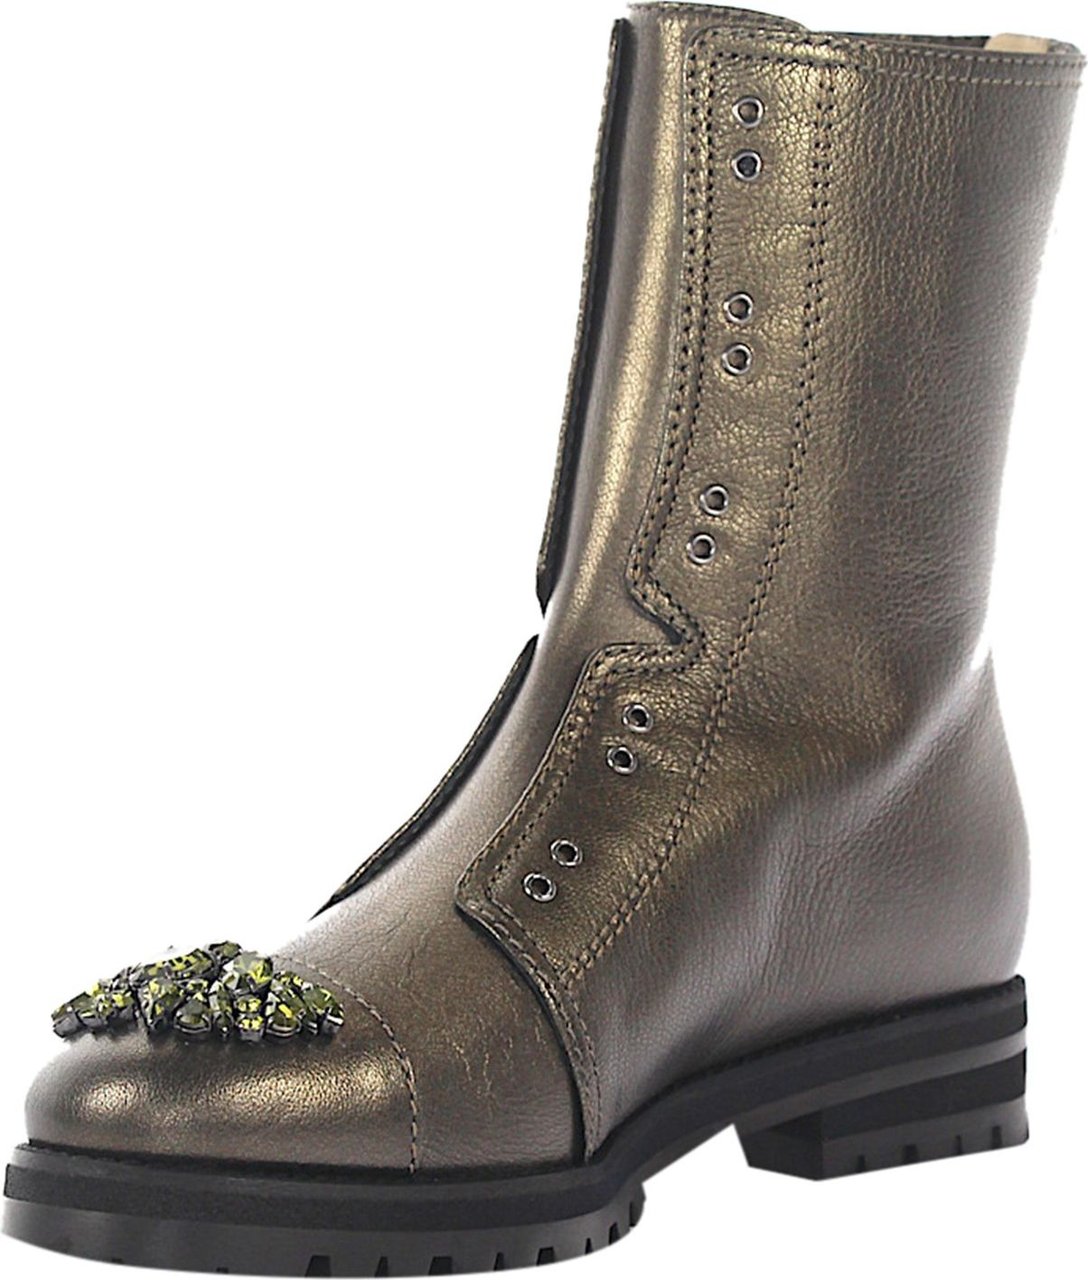 Jimmy Choo Women Ankle Boots COMBAT Calfskin Crystal Ornament Green - Kairo Groen